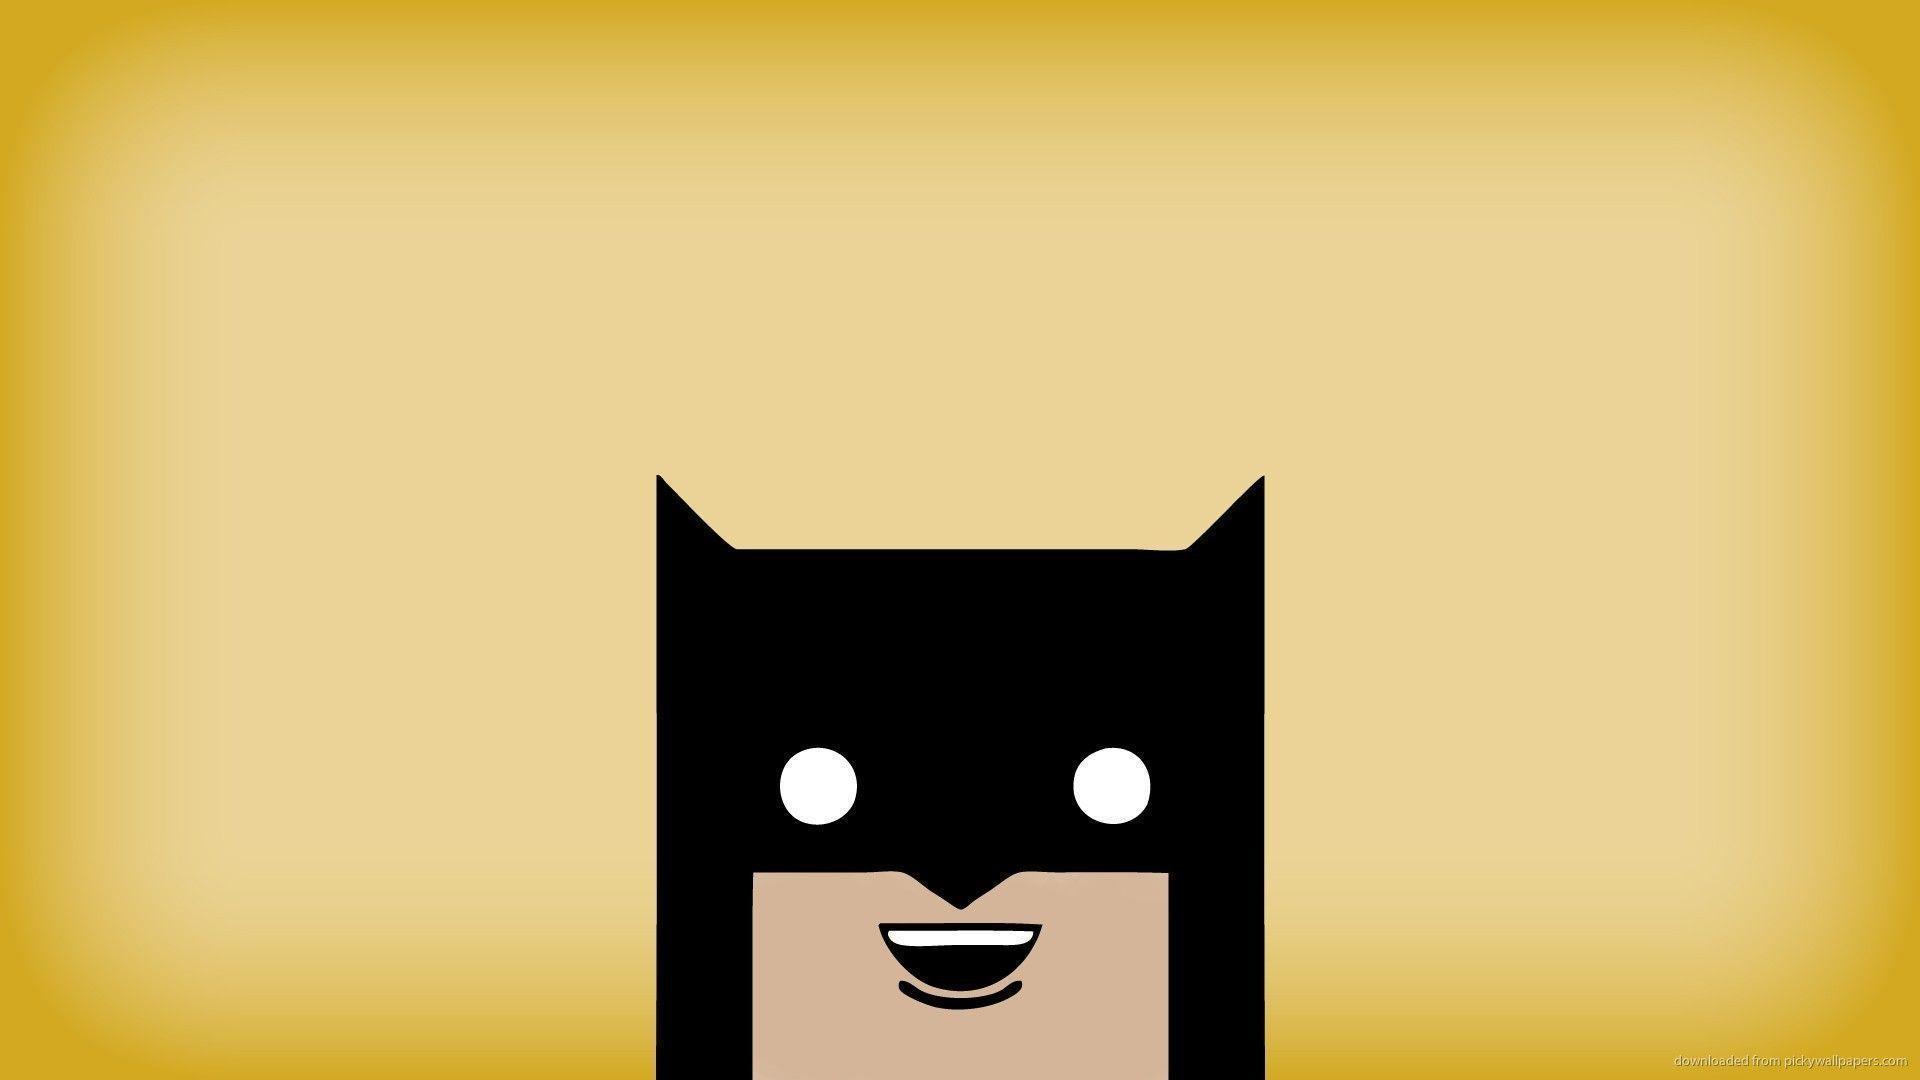 Download 1920x1080 Funny Batman Wallpaper